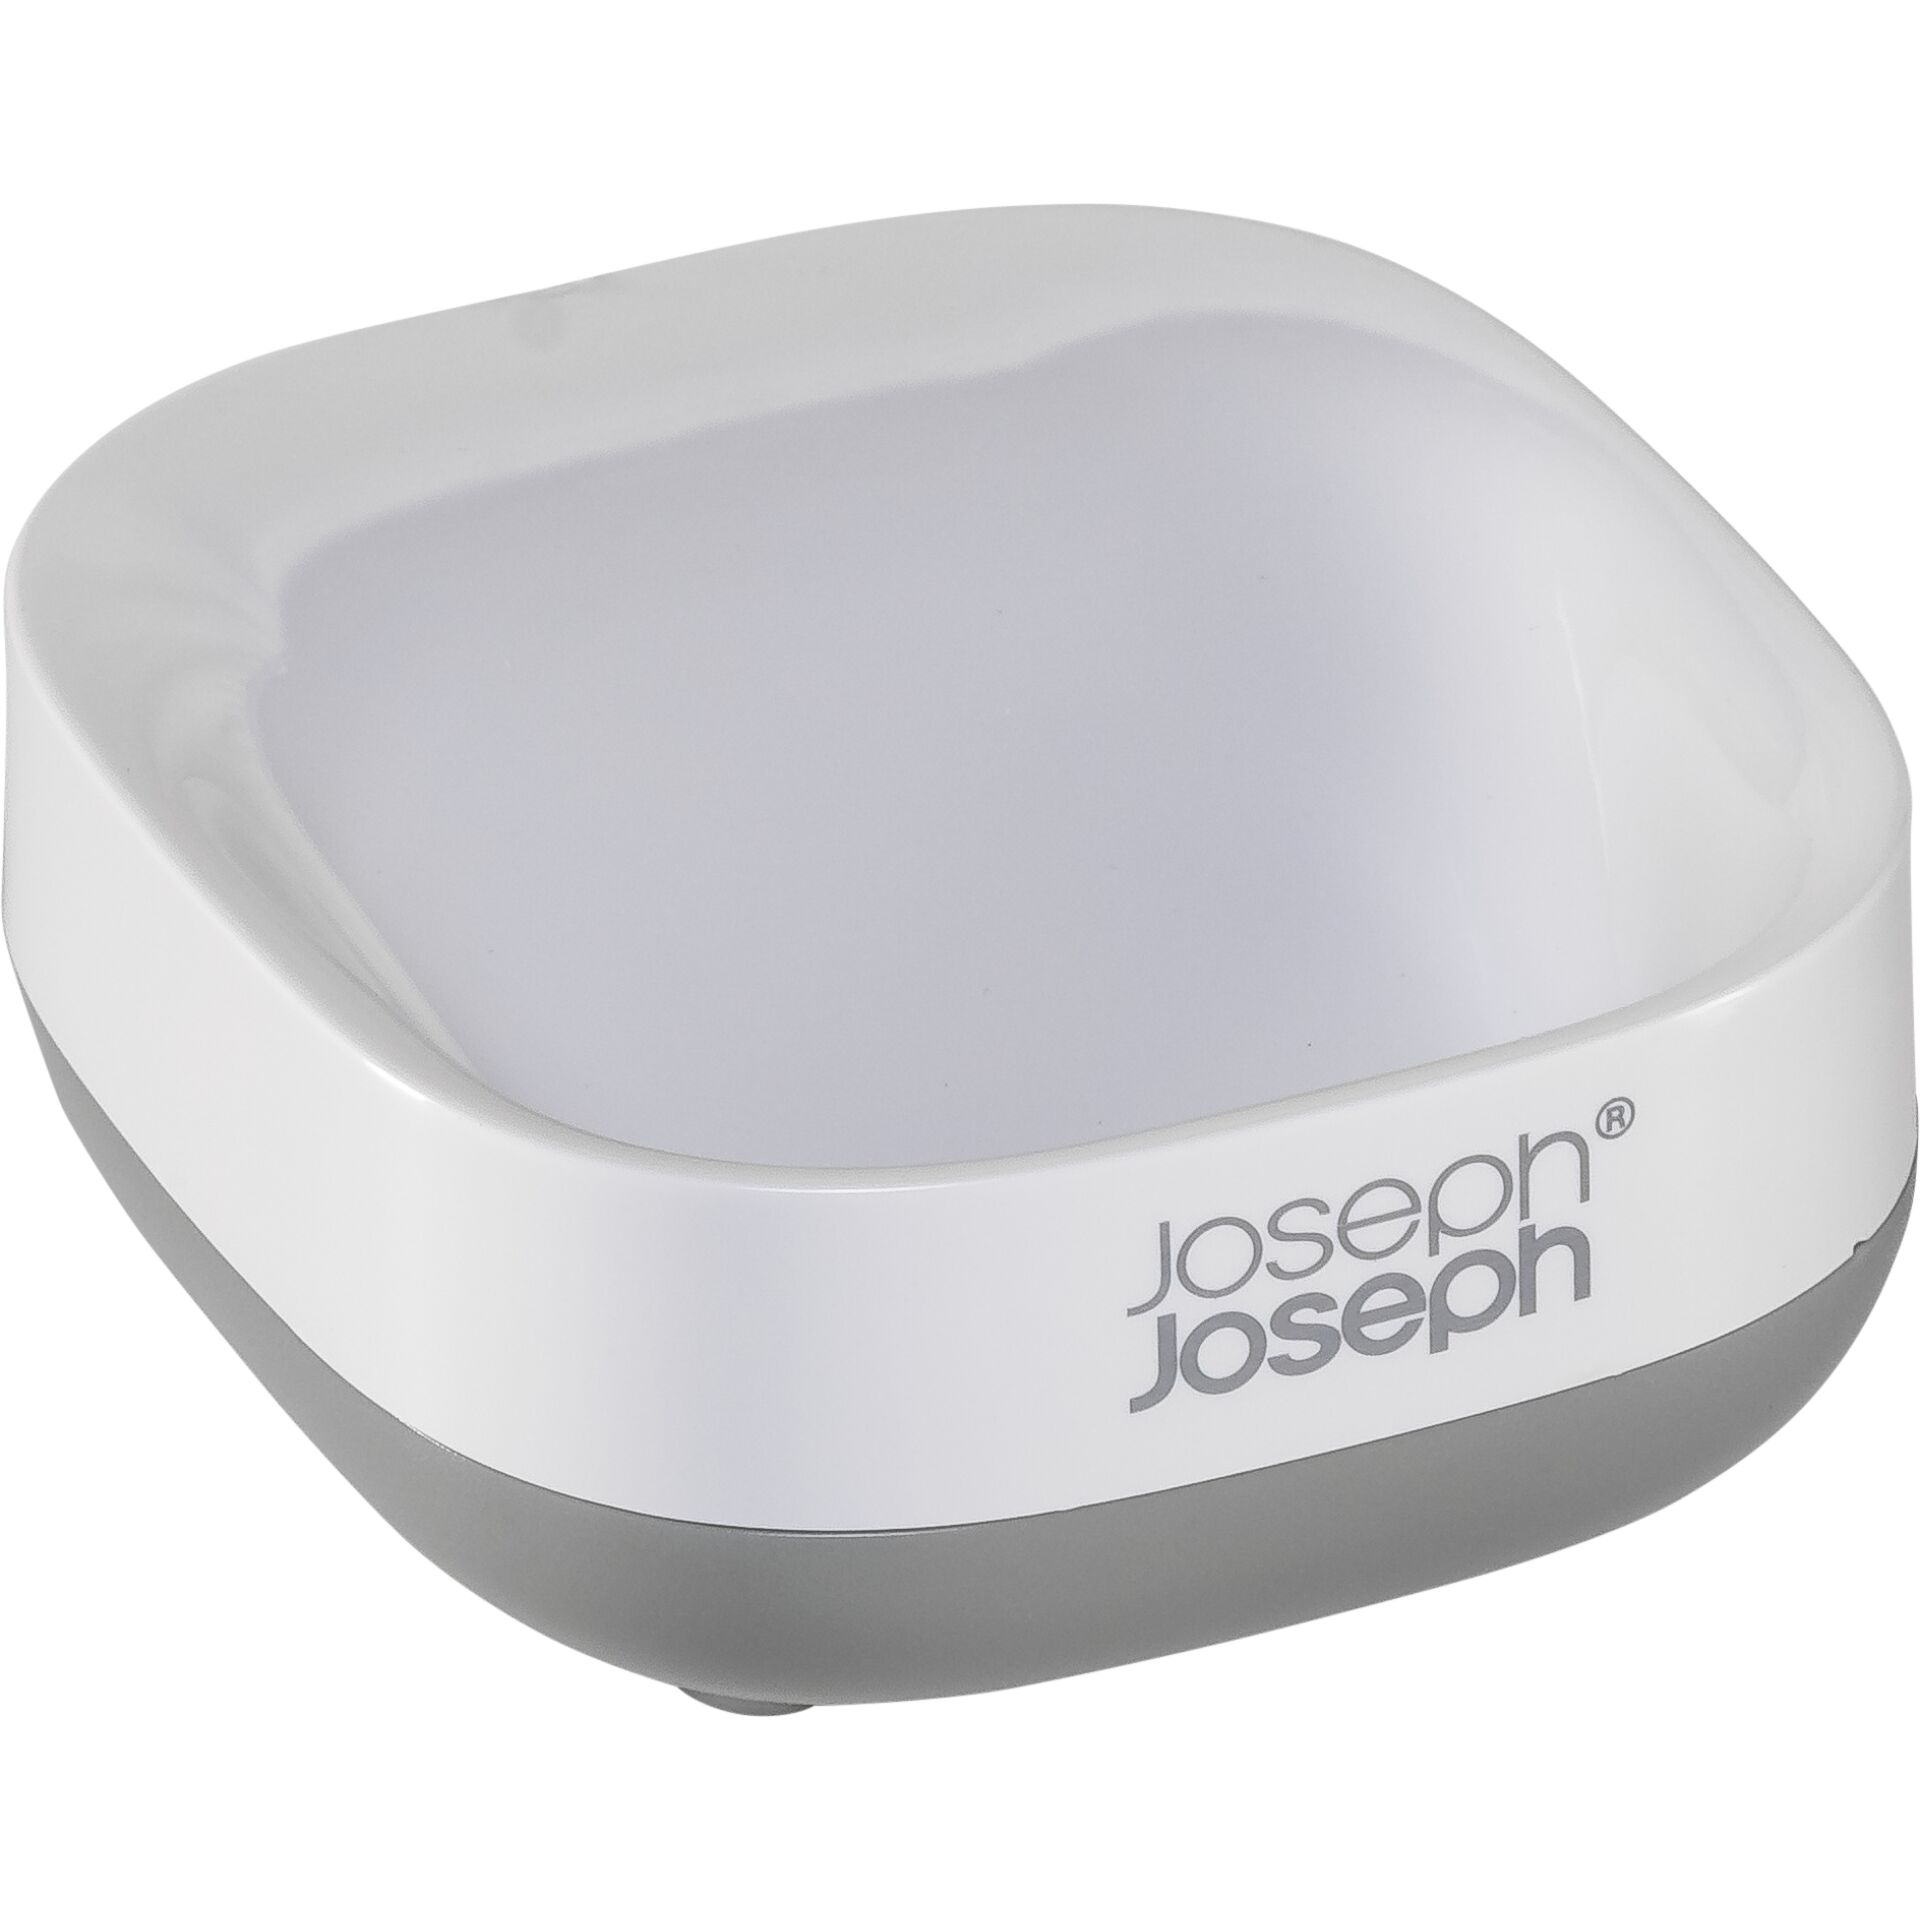 Joseph Joseph Slim Compact portasapone grigio/bianco